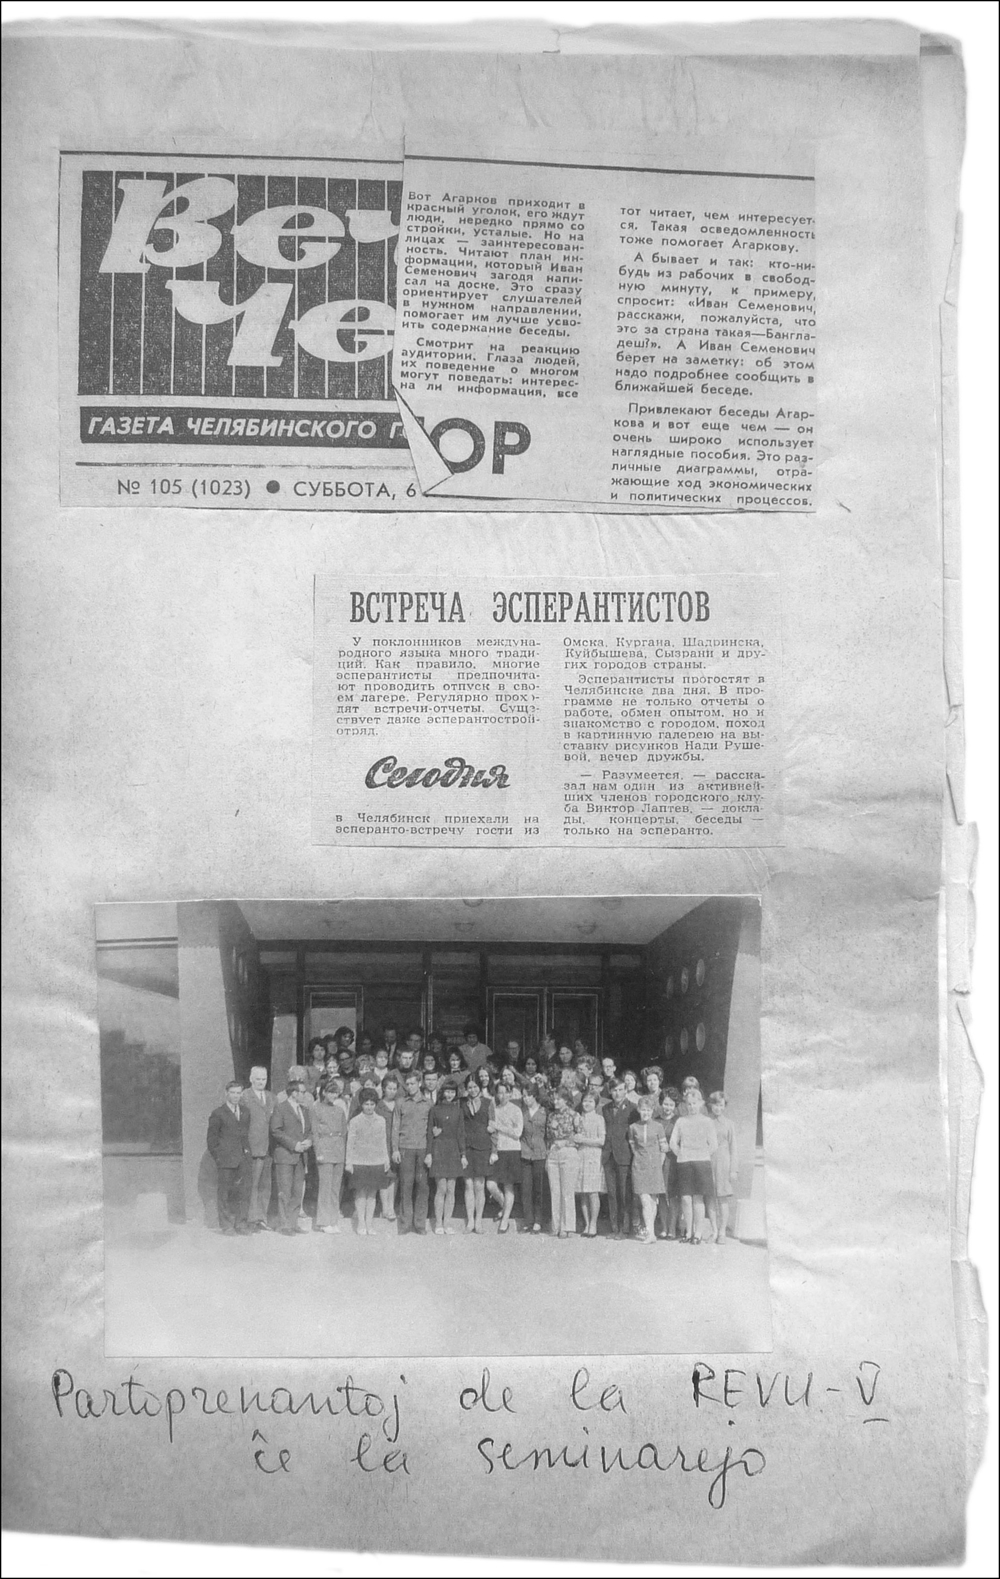 Уфимский самиздатский журнал «Akordo» – орган нелегального «Советского эсперантистского юношеского движения»